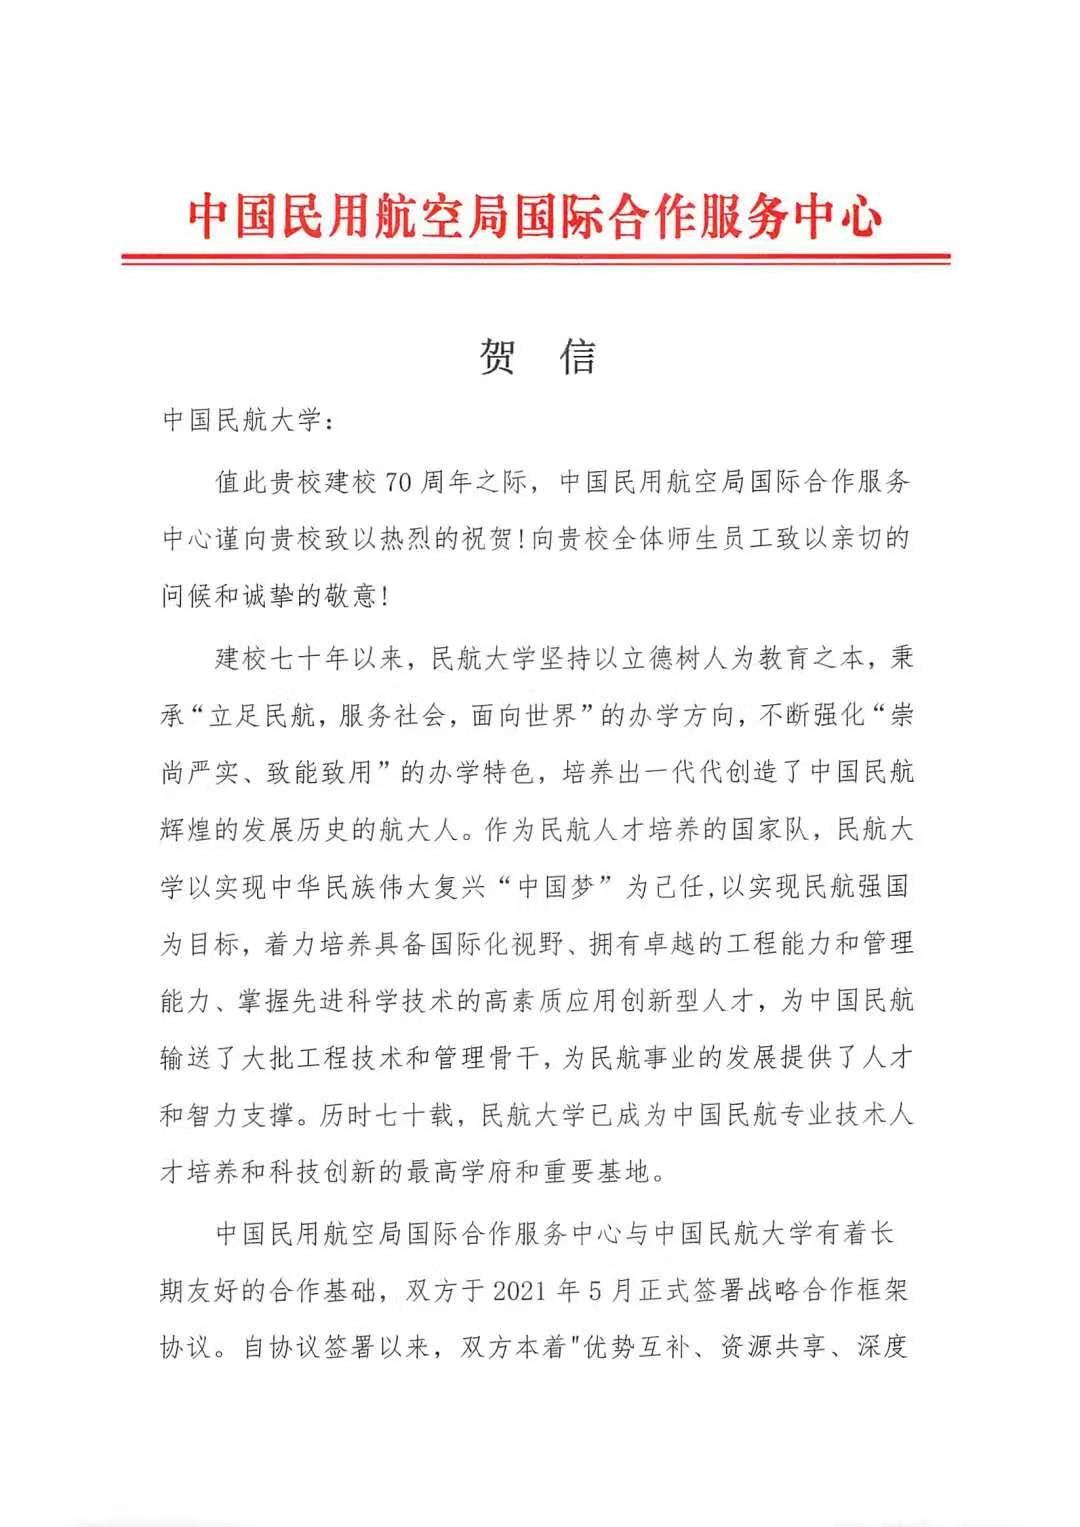 【70周年校庆】中国民用航空局国际合作服务中心发来贺信